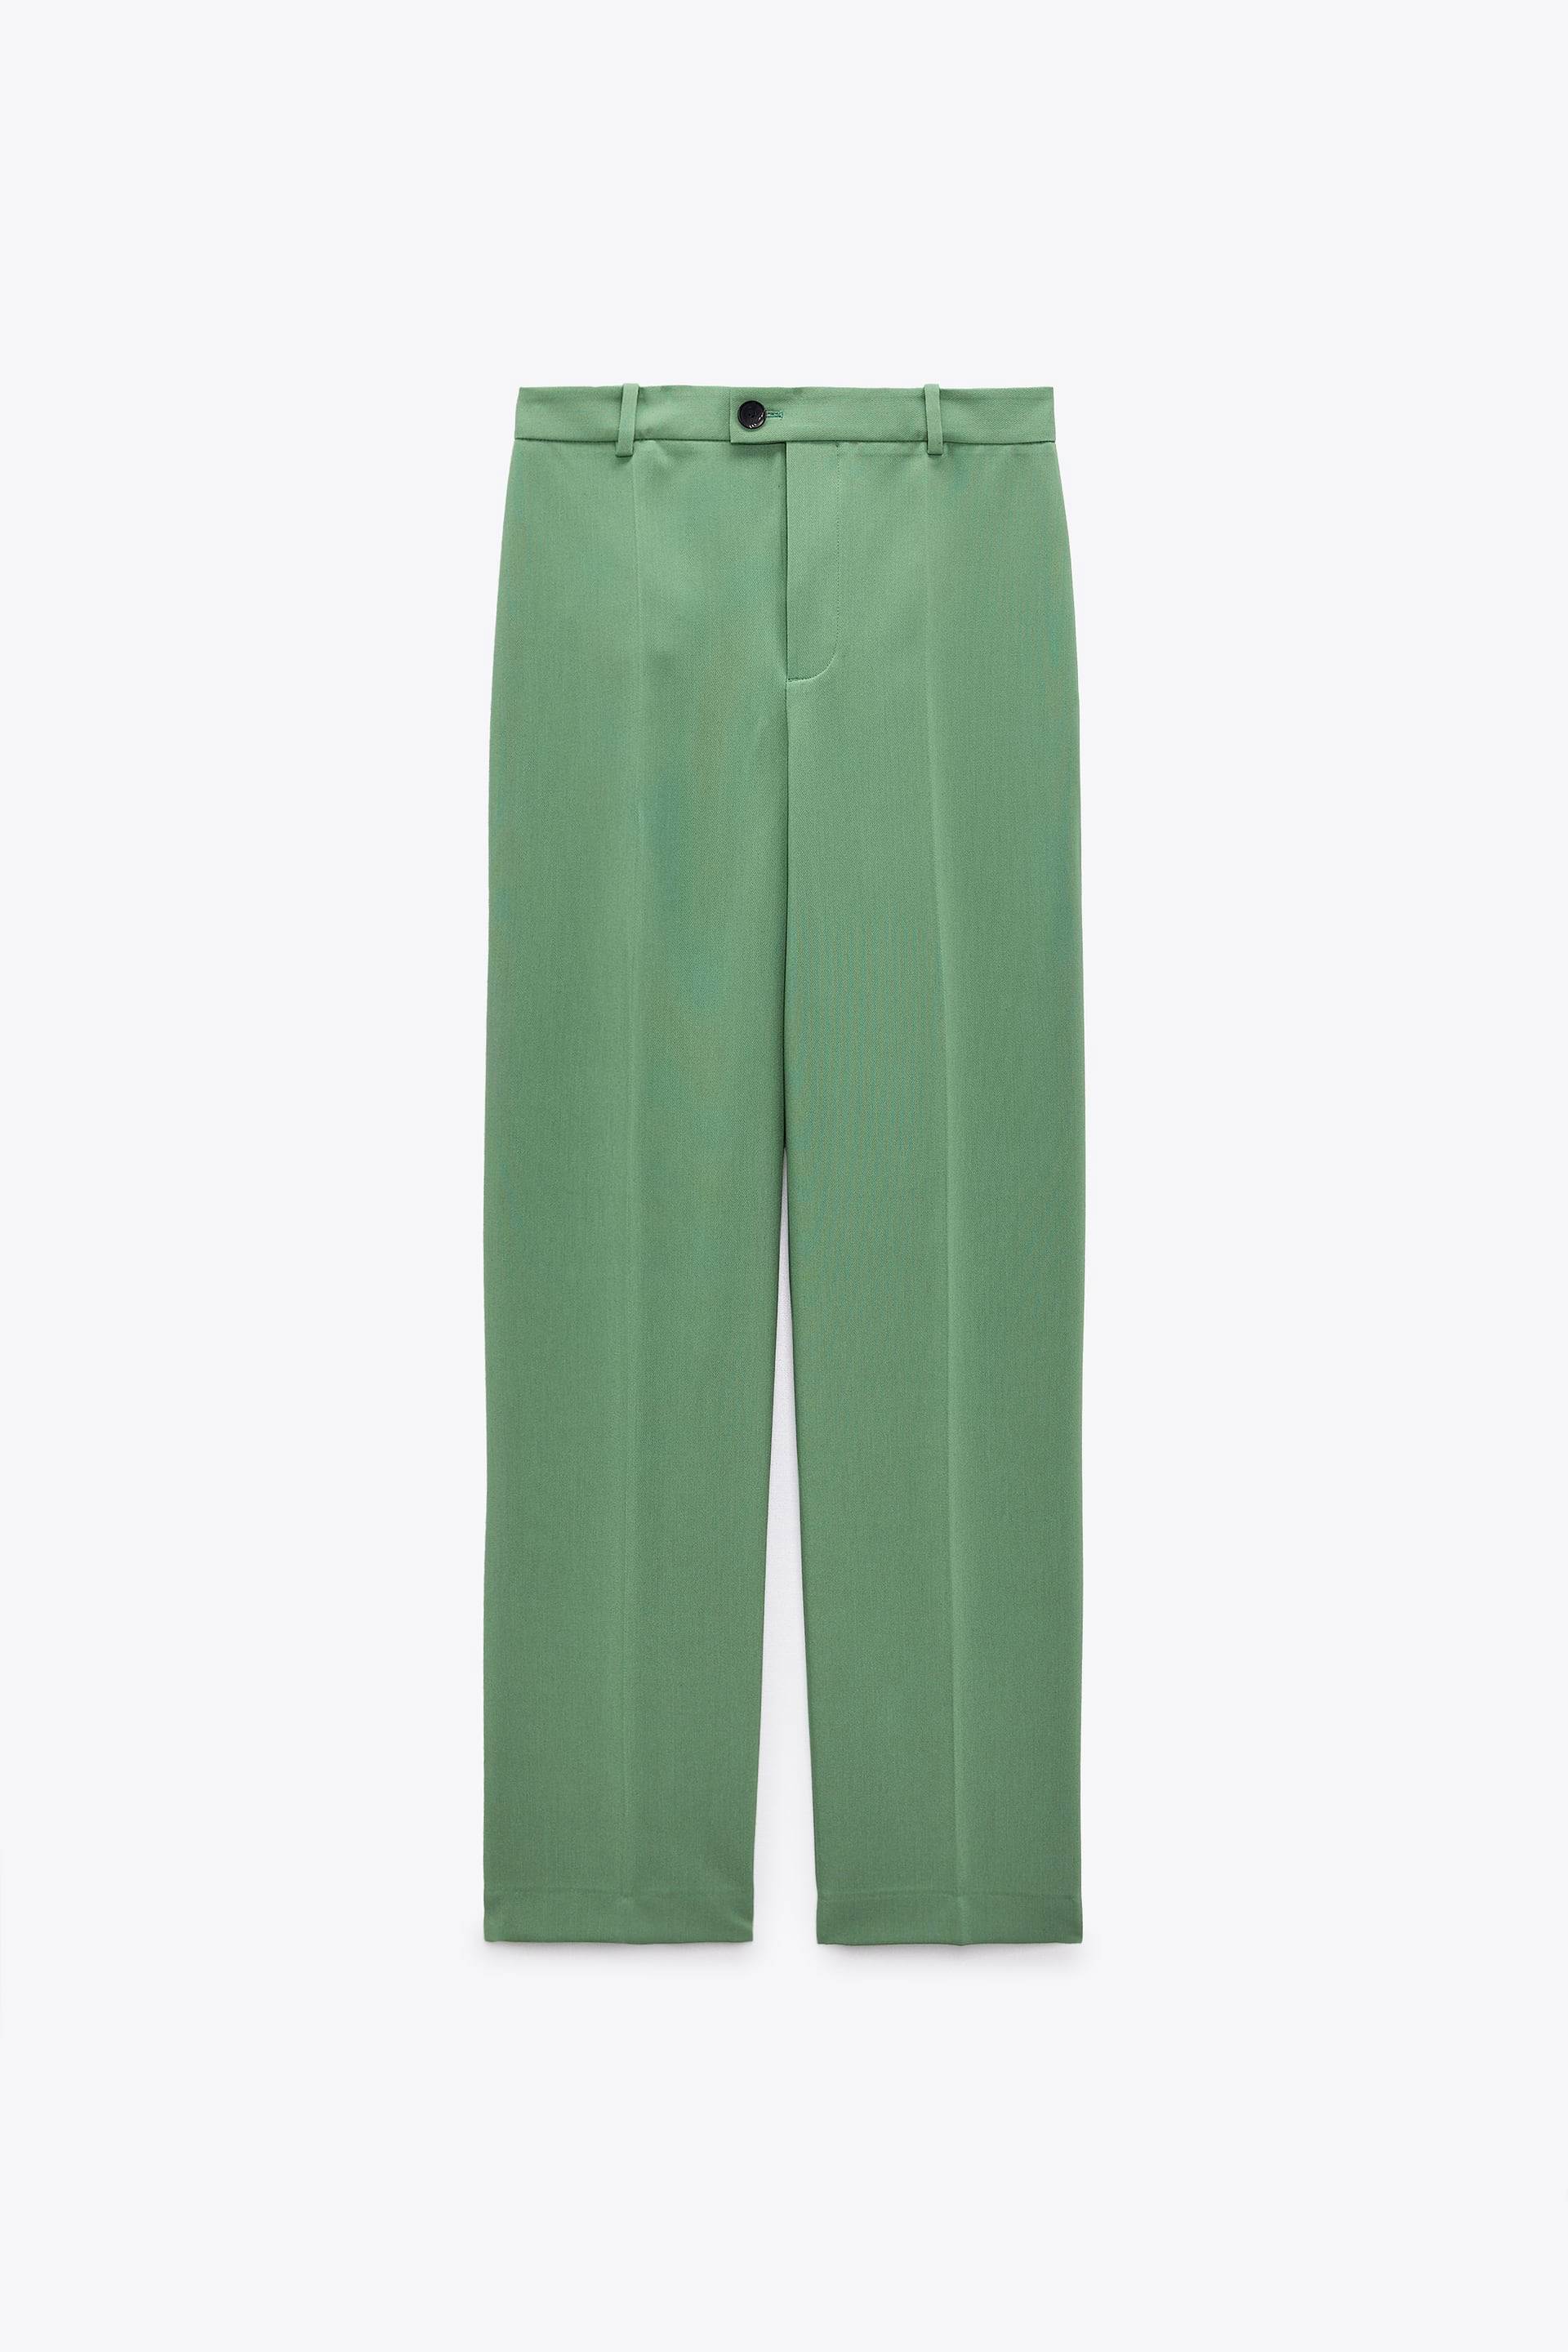 Las mejores ofertas en Pantalones Zara comprobar tamaño regular